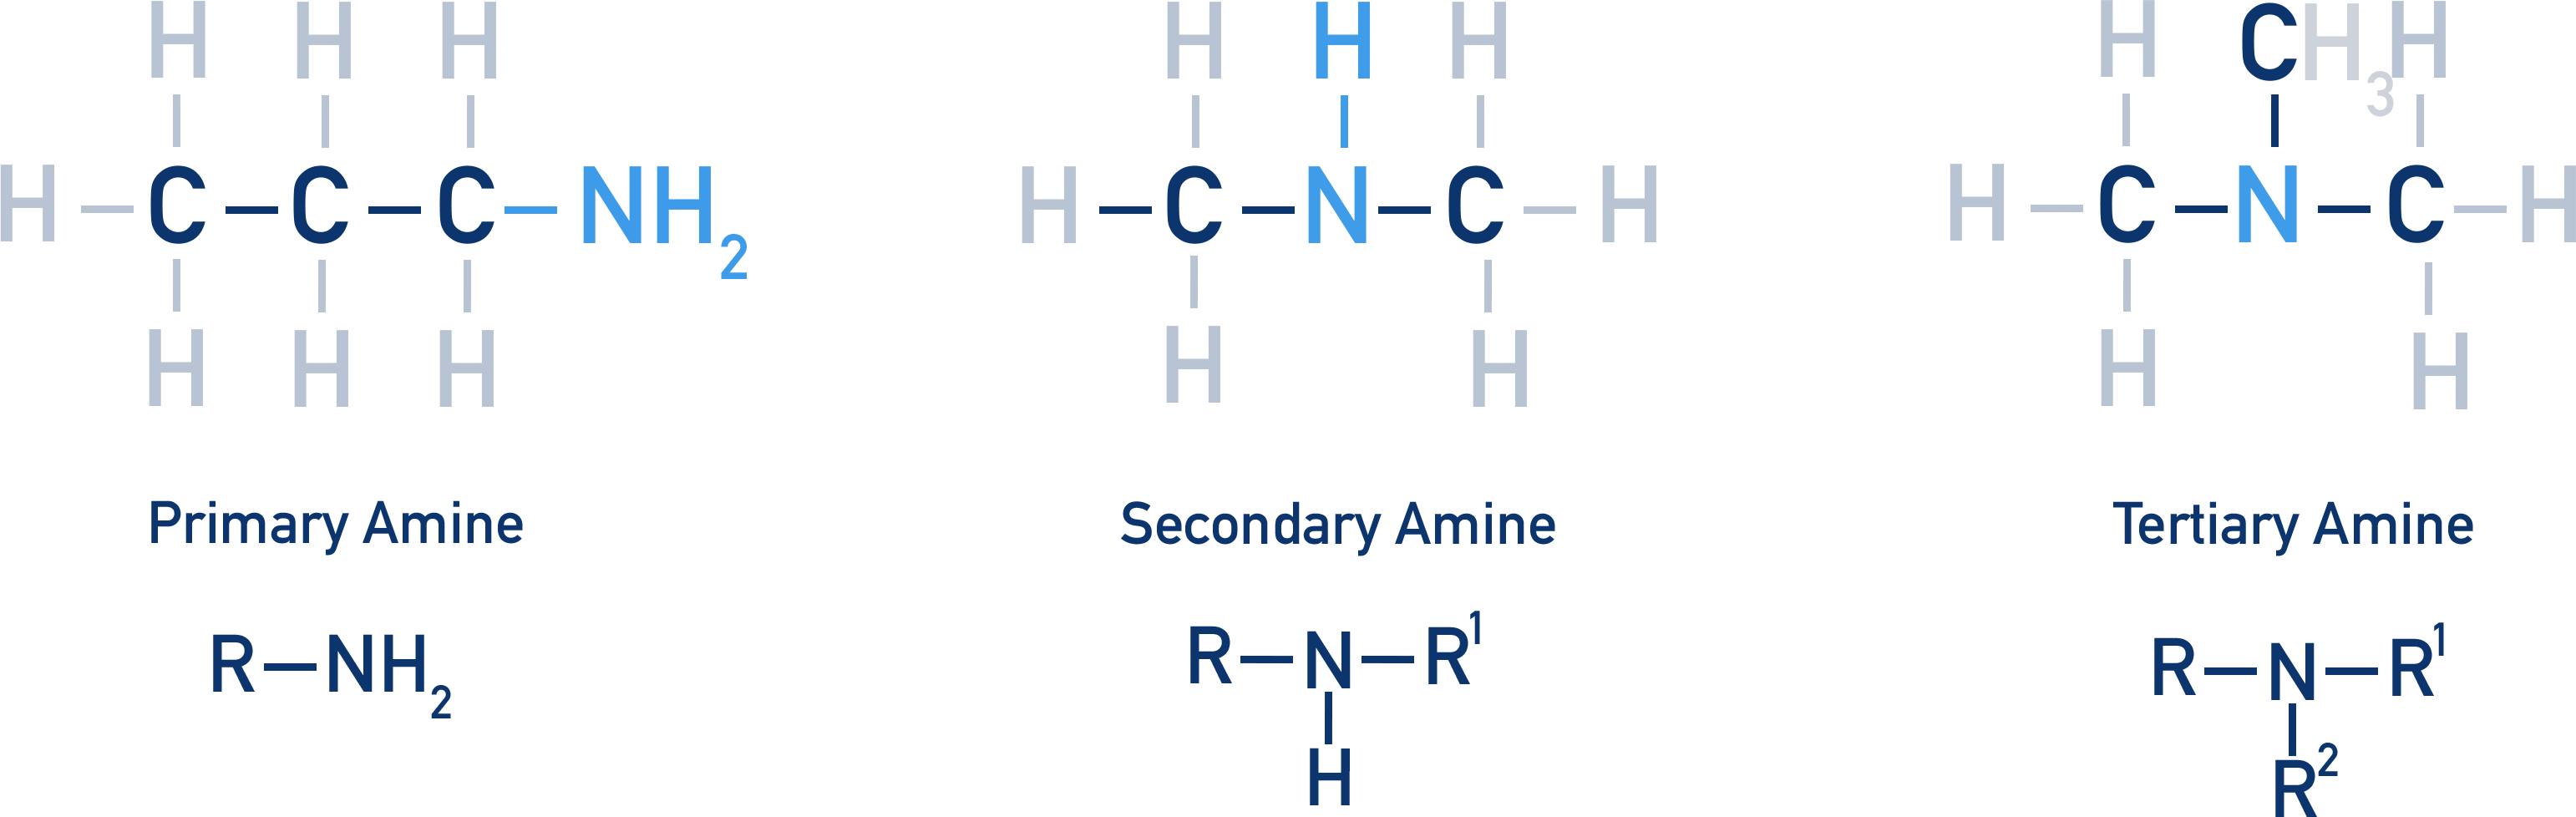 amides vs amines